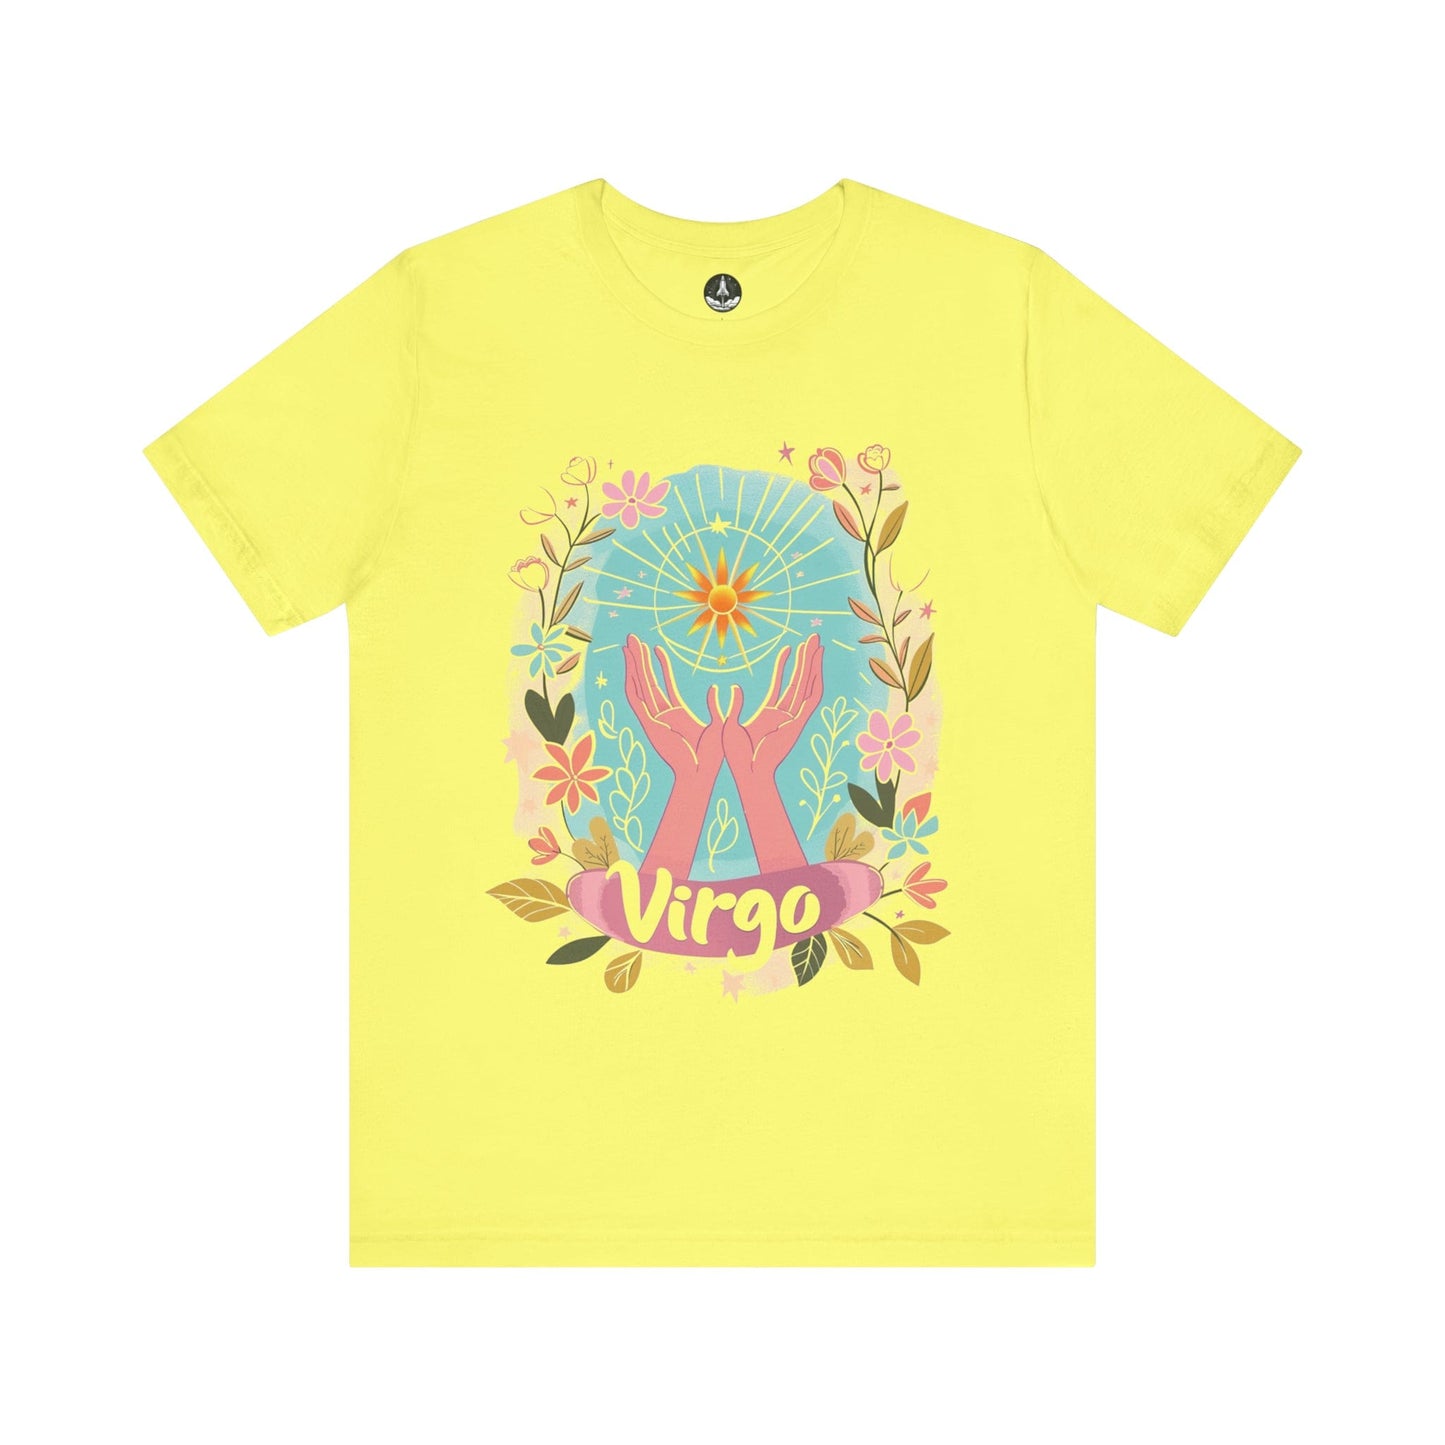 T-Shirt Yellow / S Virgo's Bloom TShirt: Nurturing Nature's Beauty